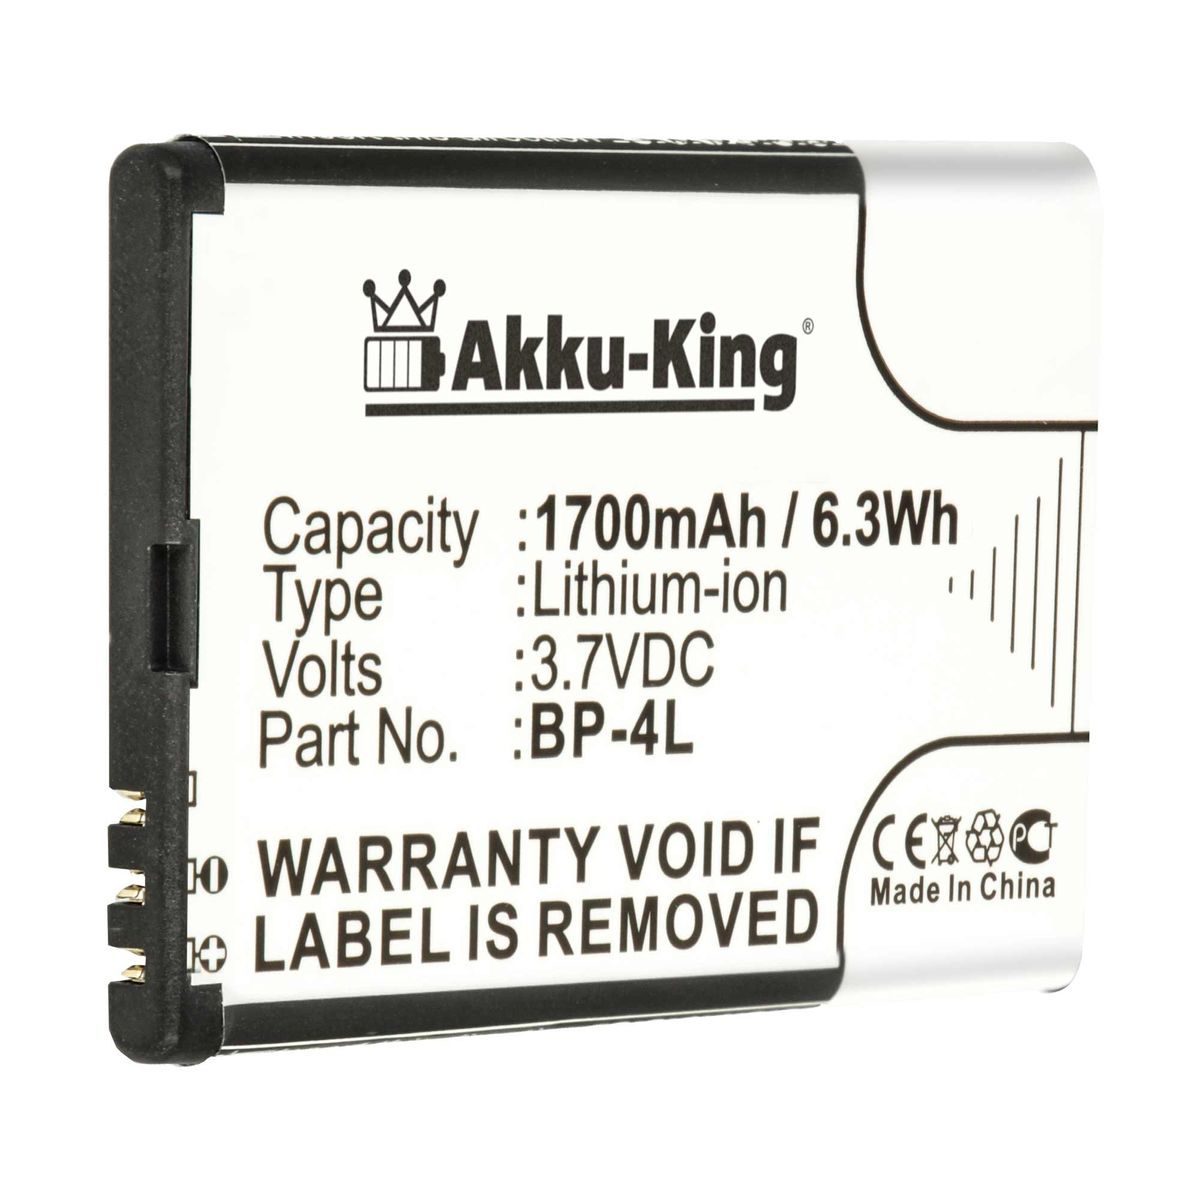 mit 3.7 Handy-Akku, Li-Ion kompatibel Volt, Nokia AKKU-KING Akku 1700mAh BP-4L